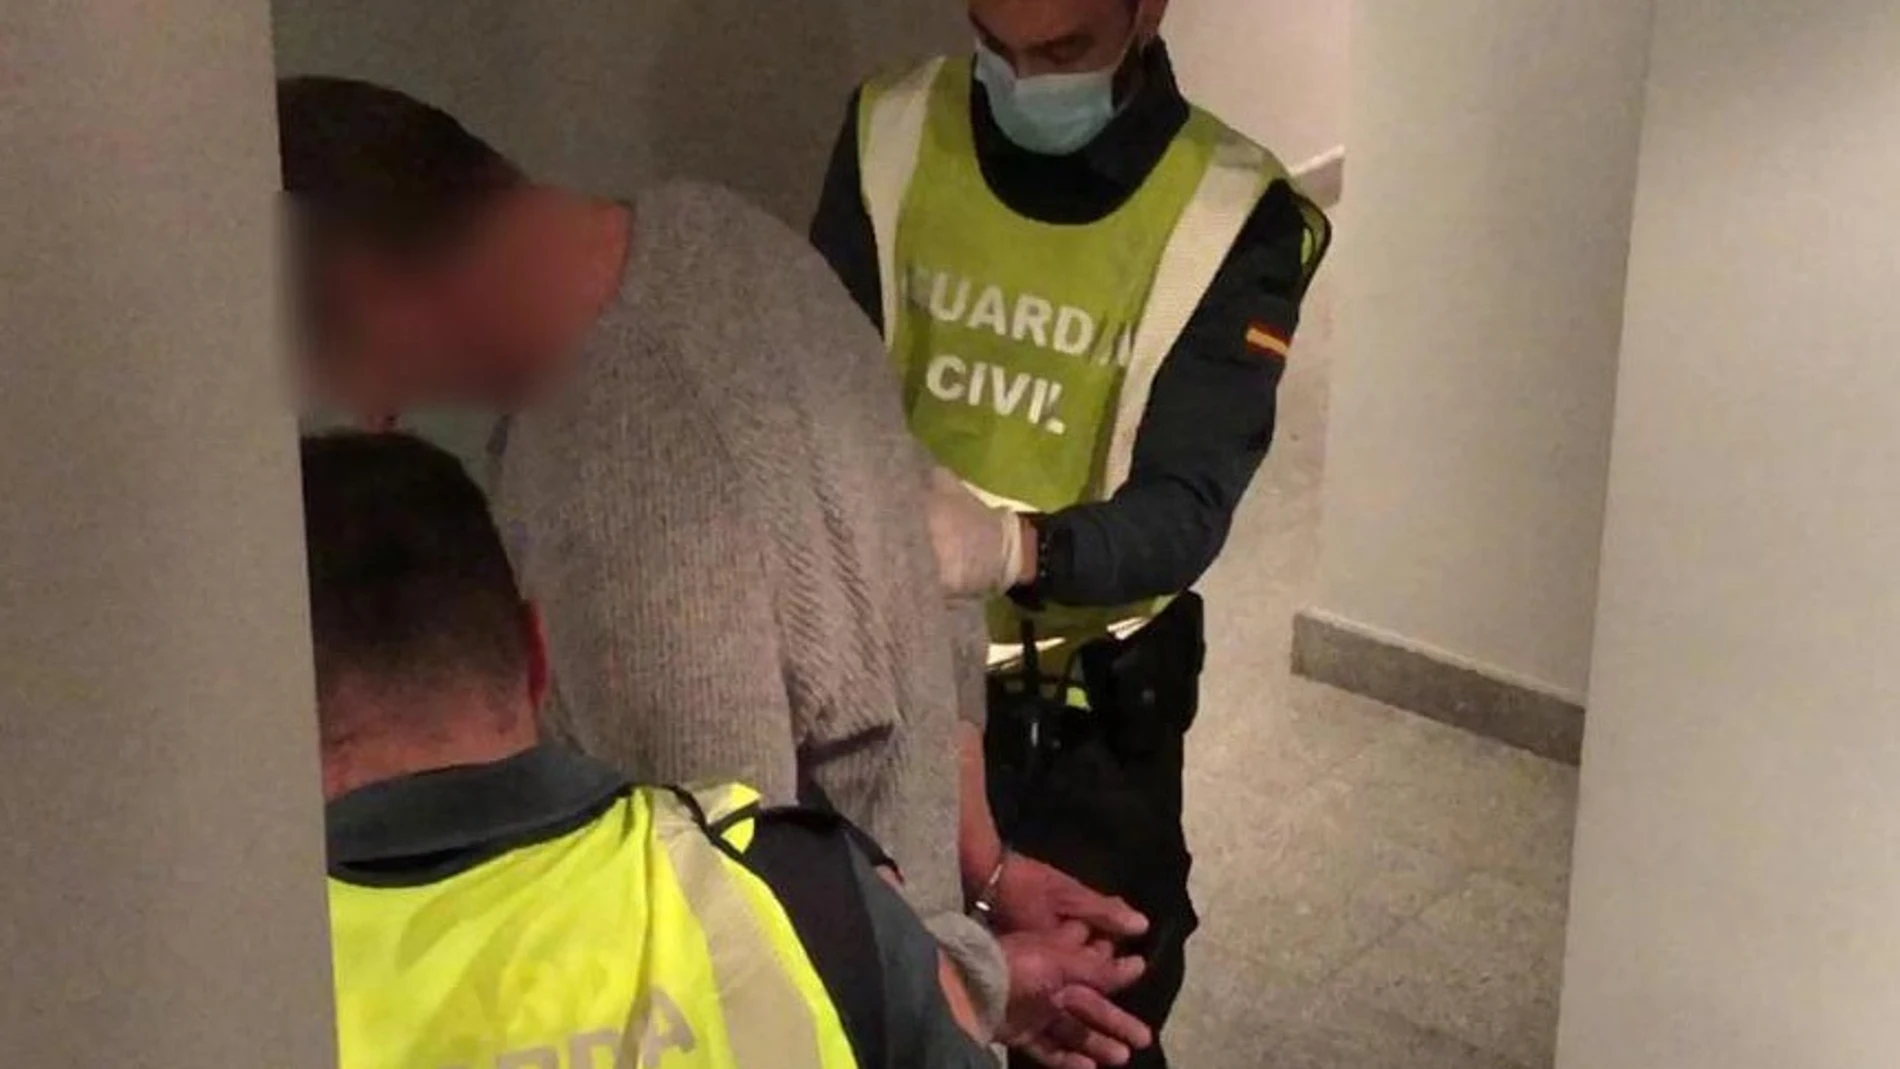 Momento en el que la Guardia Civil detiene al acusado de asesinar anoche a un niño de 9 años en Lardero